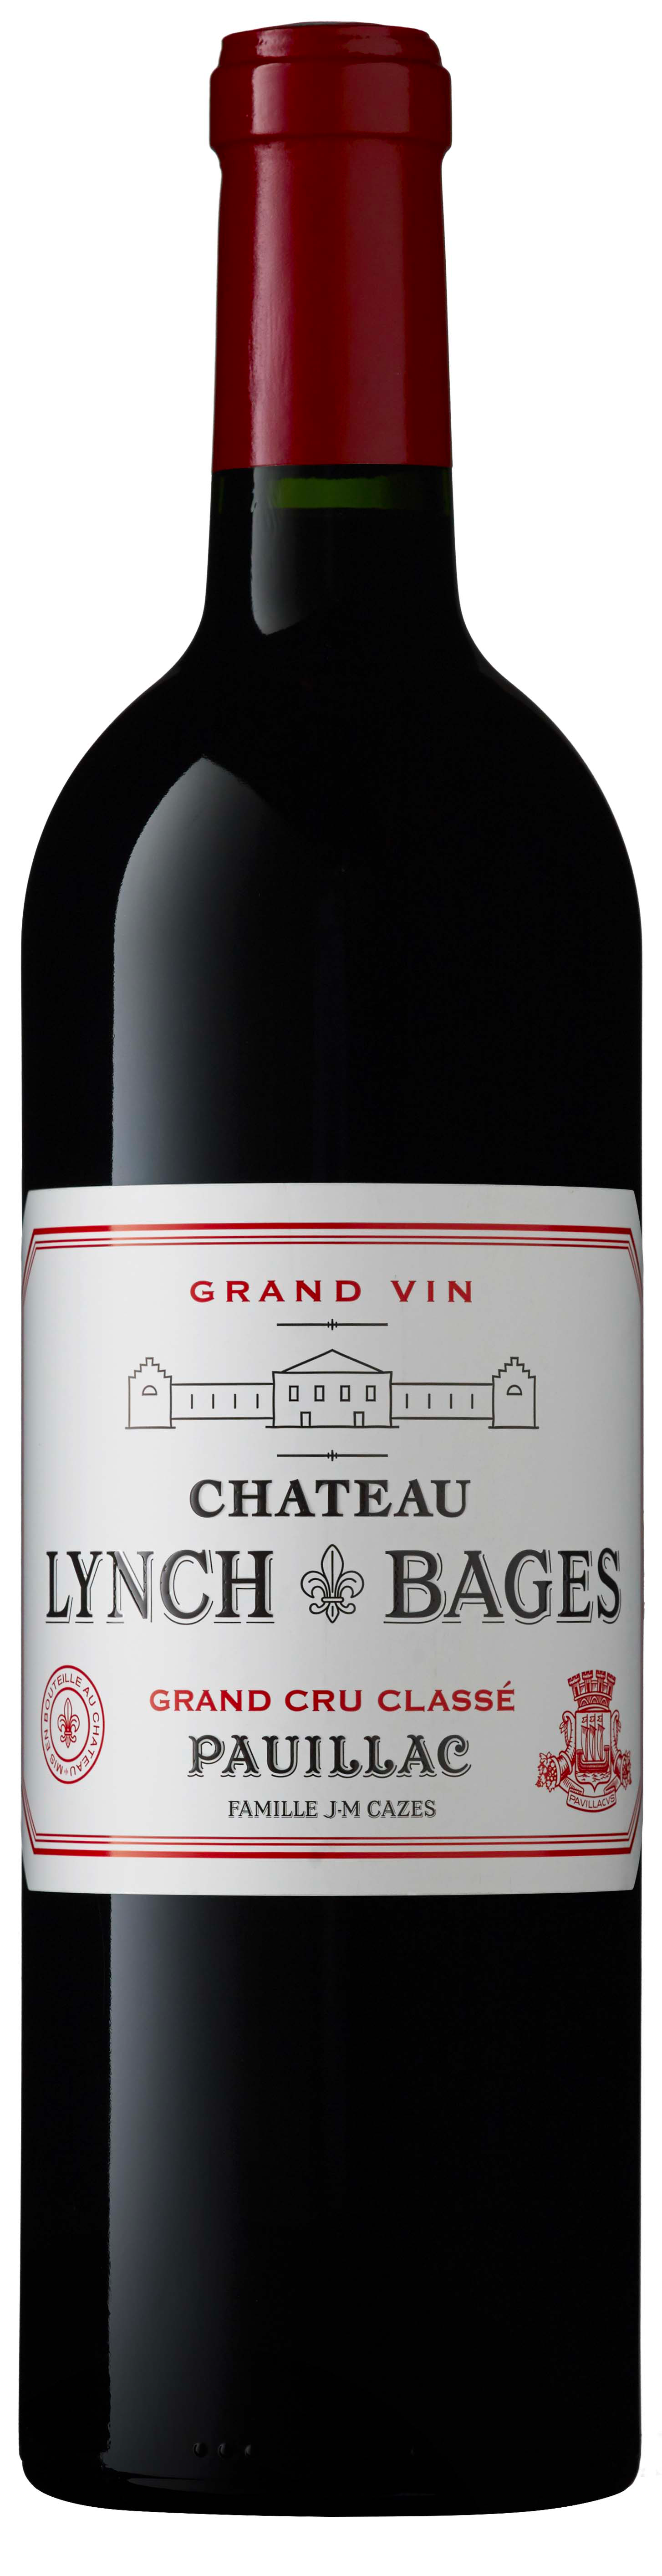 Lynch bages 2016 5 me Grand cru class Pauillac, Bordeaux rouge